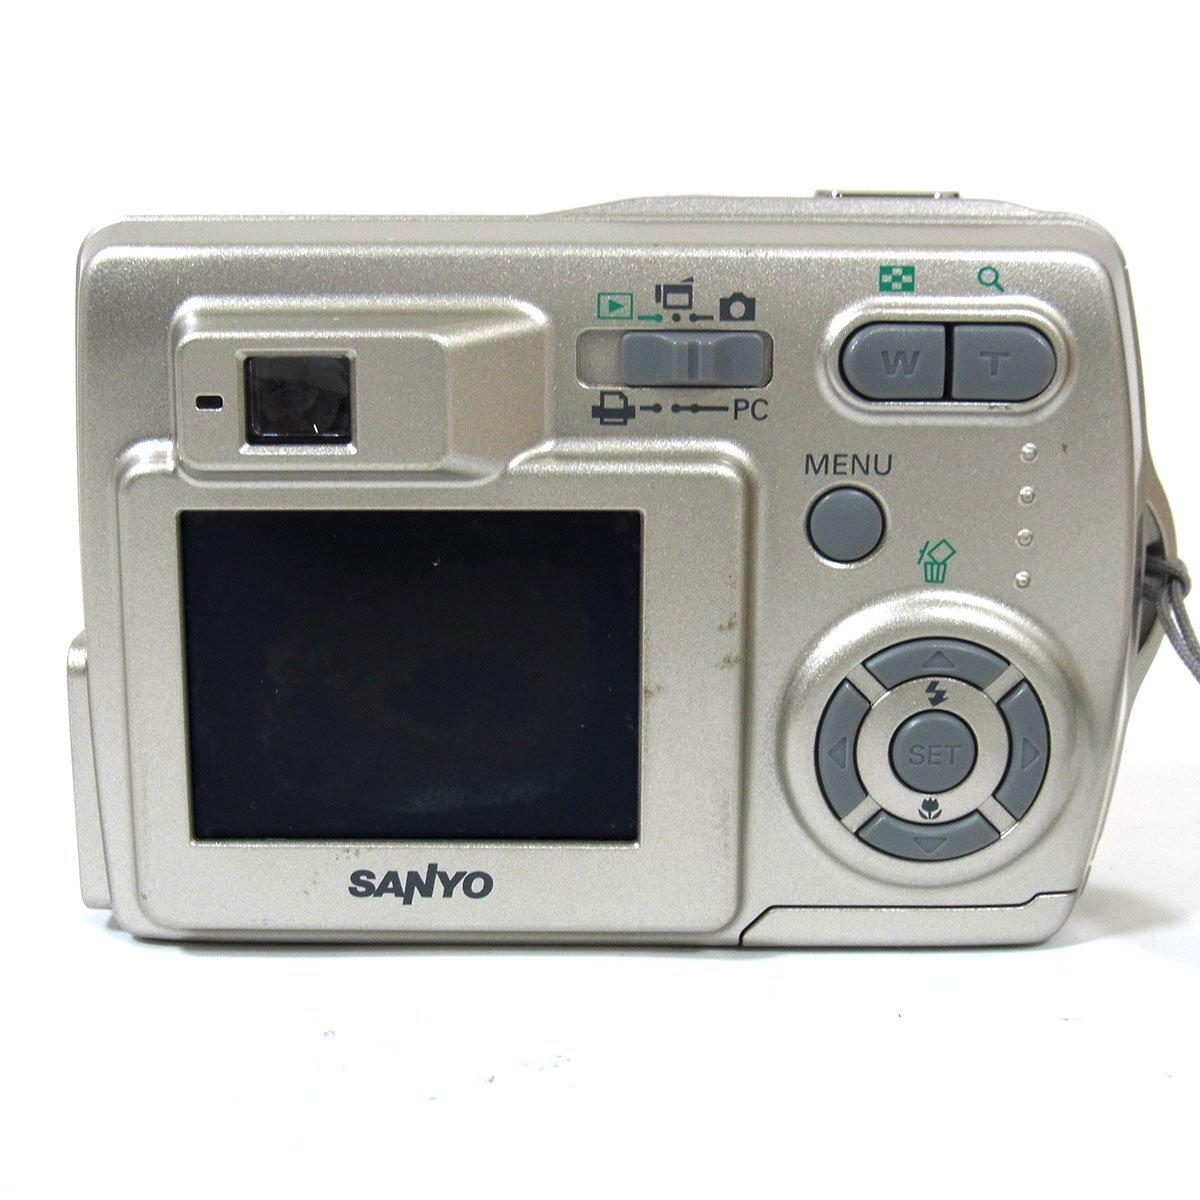  Sanyo Sanyo Xacti DSC-S5 type цифровая камера оттенок серебра электризация простой рабочее состояние подтверждено SANYO *